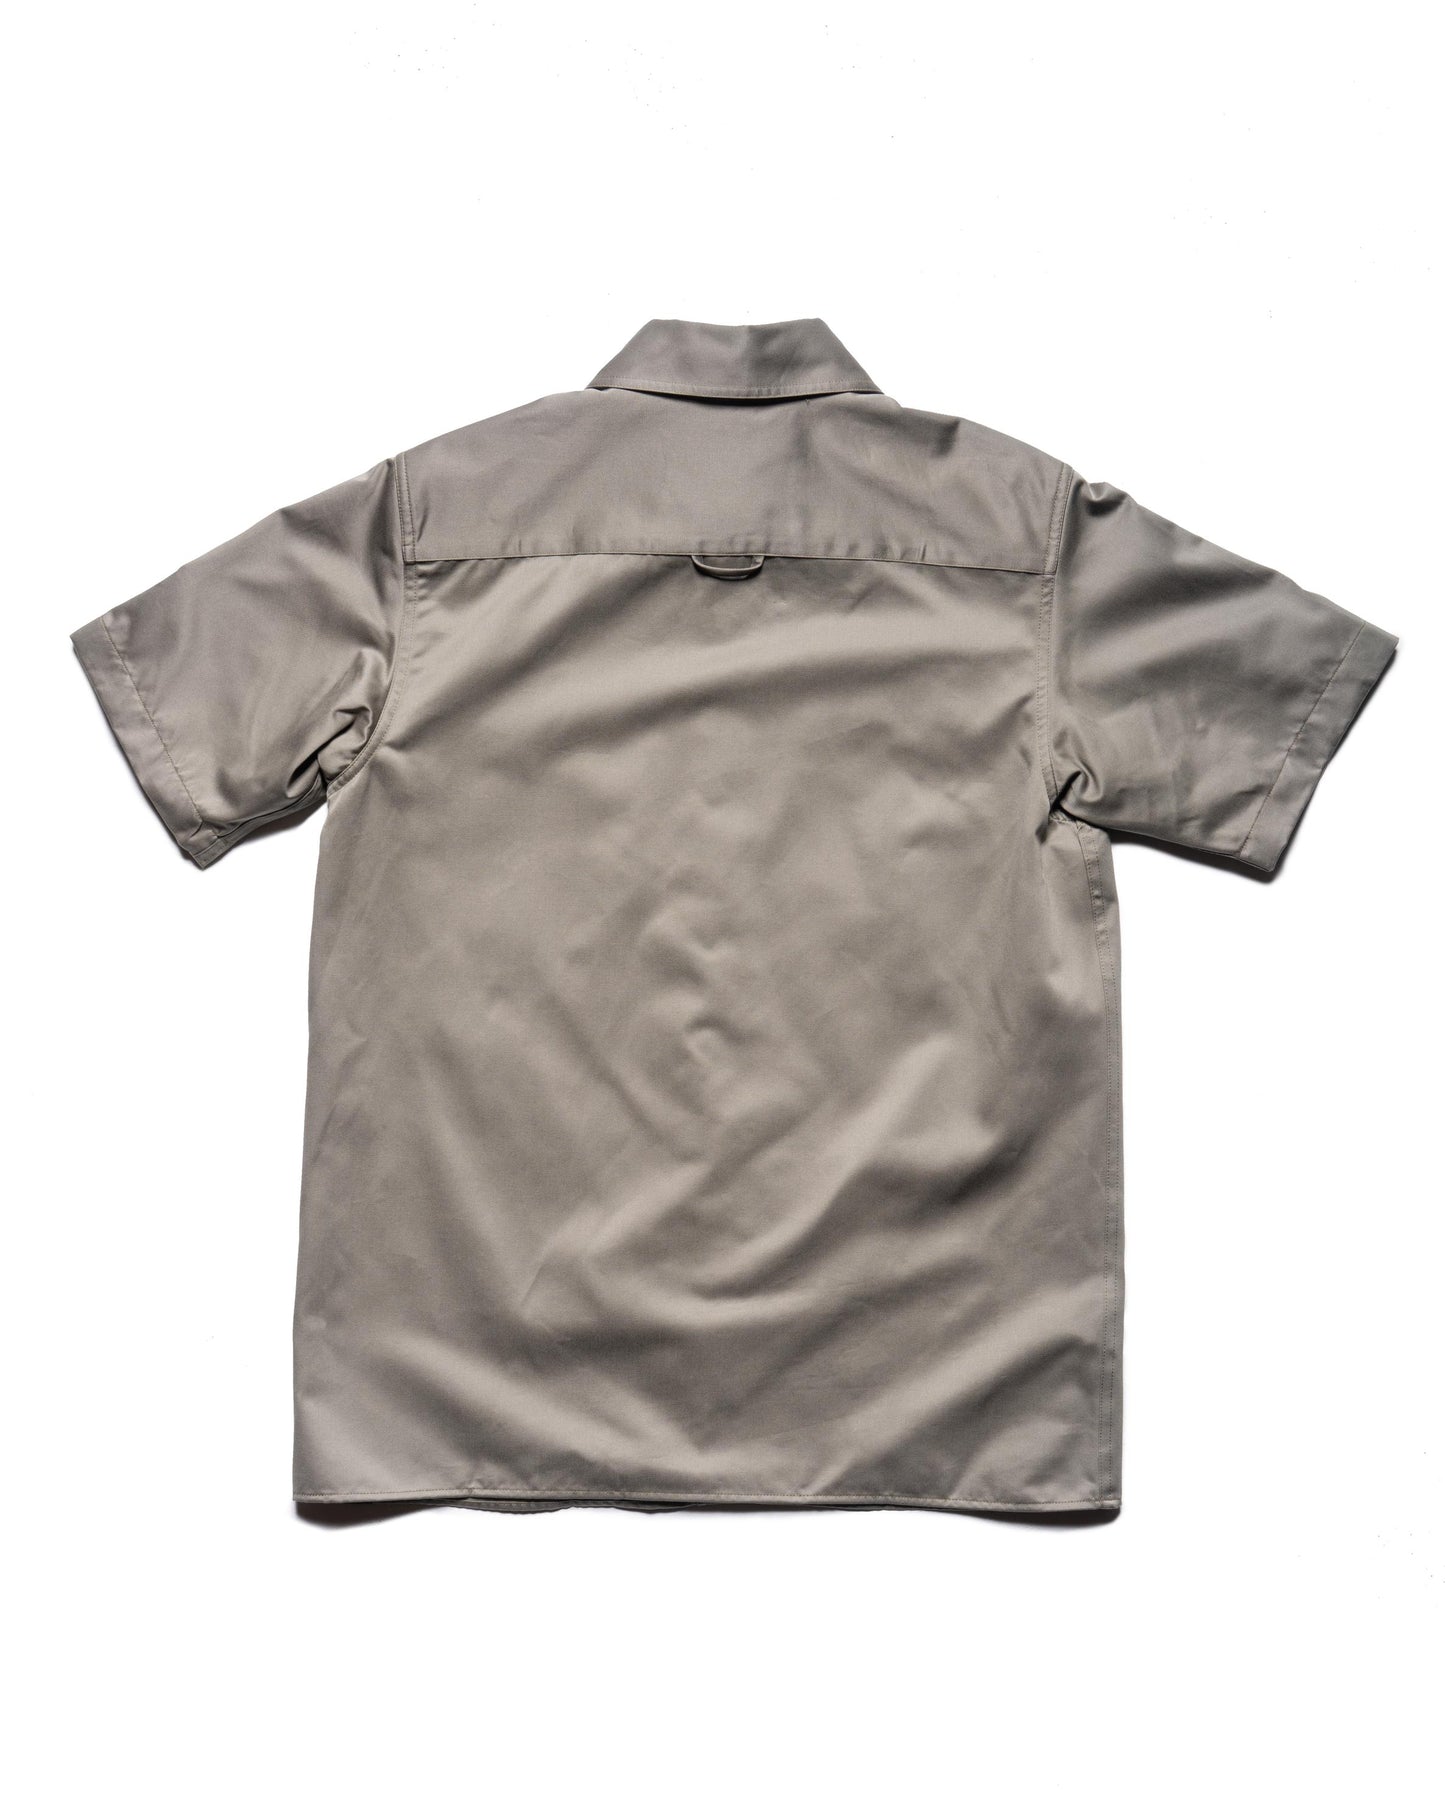 Biodegradable work shirt